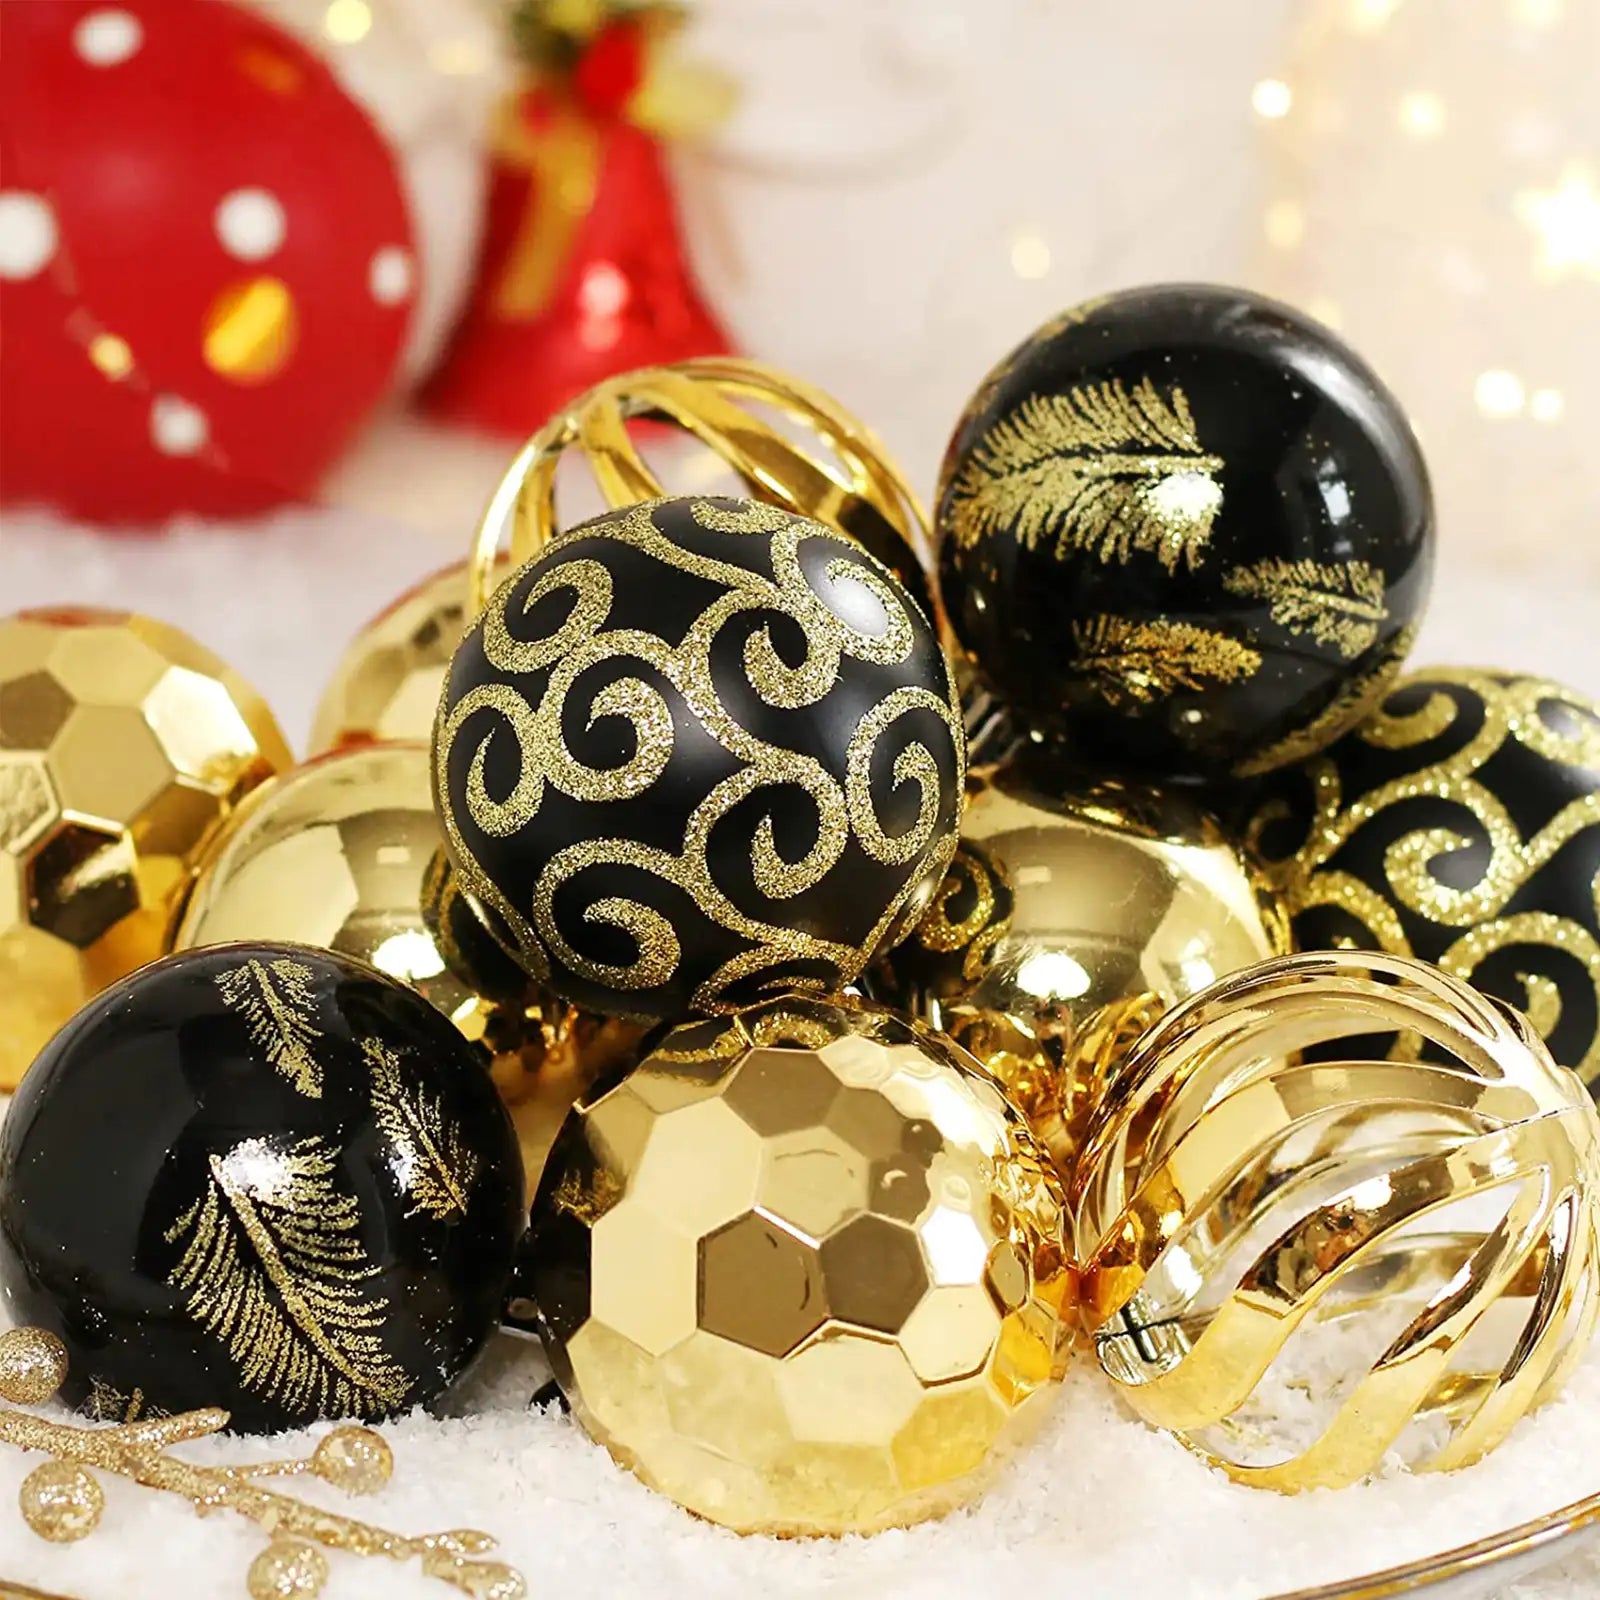 Los ornamentos del árbol de navidad, decoración de la bola de la Navidad 30ct fijaron 2,36" 